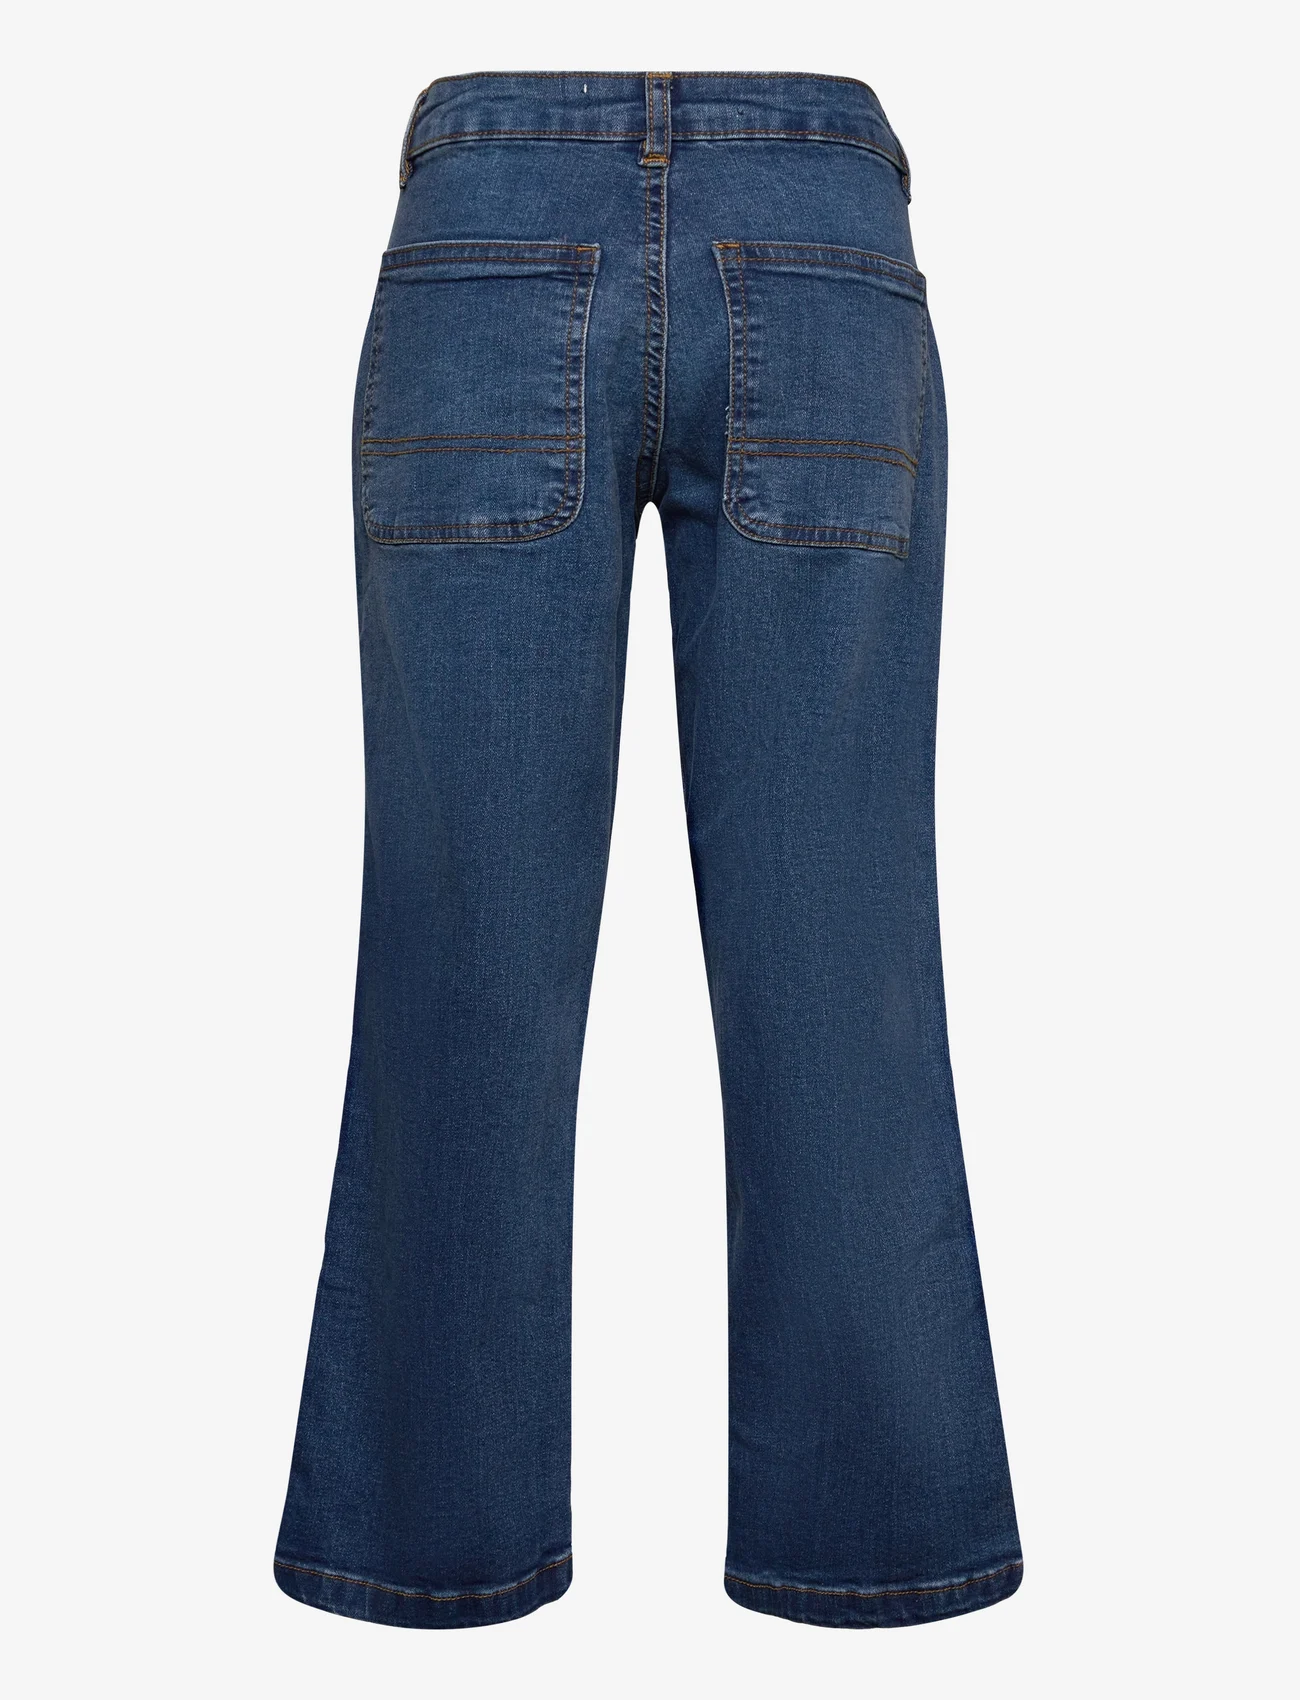 Sofie Schnoor Young - Trousers - jeans met wijde pijpen - navy blue - 1